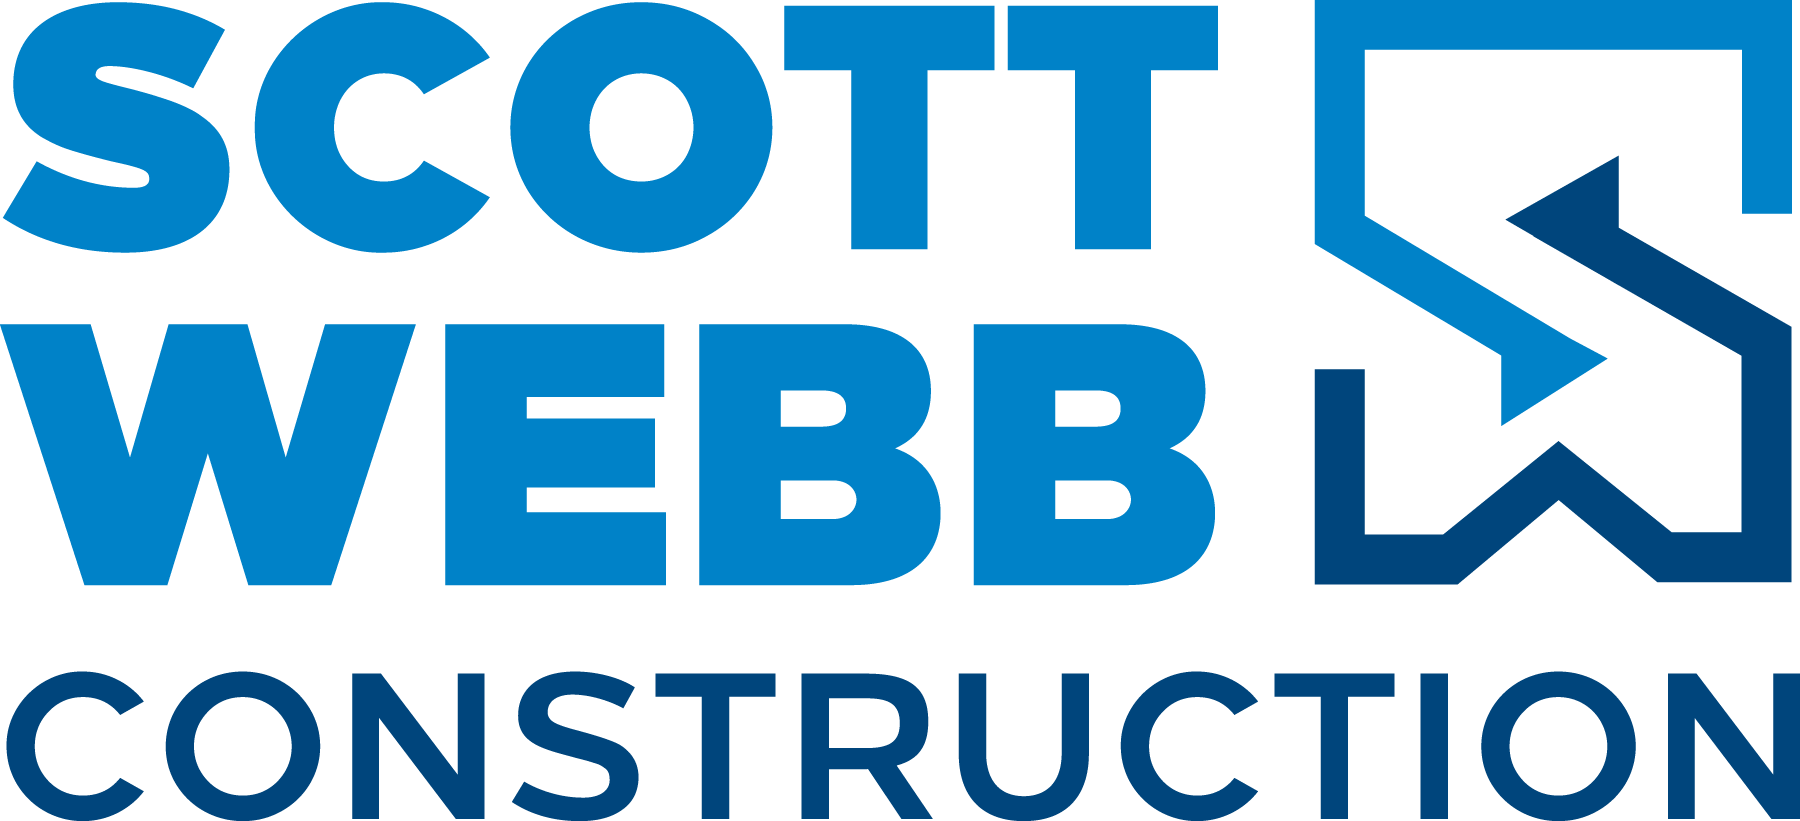 Scott Webb Construction Logo